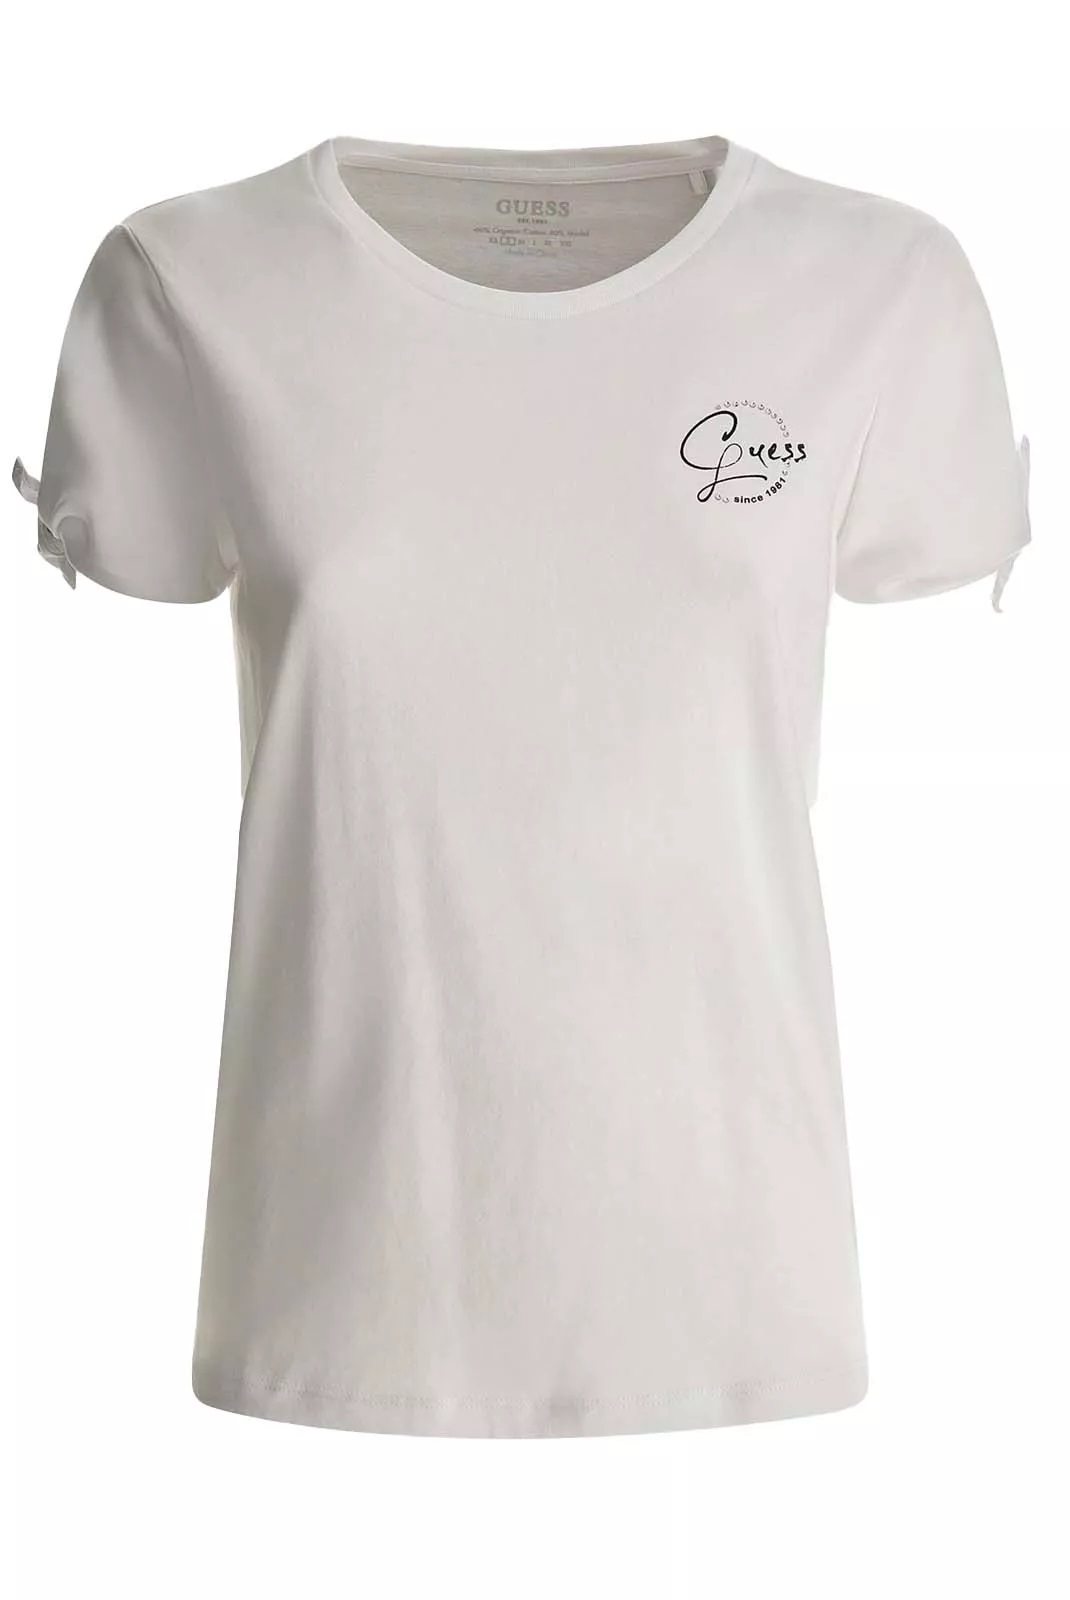 Guess dámské tričko s ozdobnými rukávy a kamínky bílé Velikost: XS